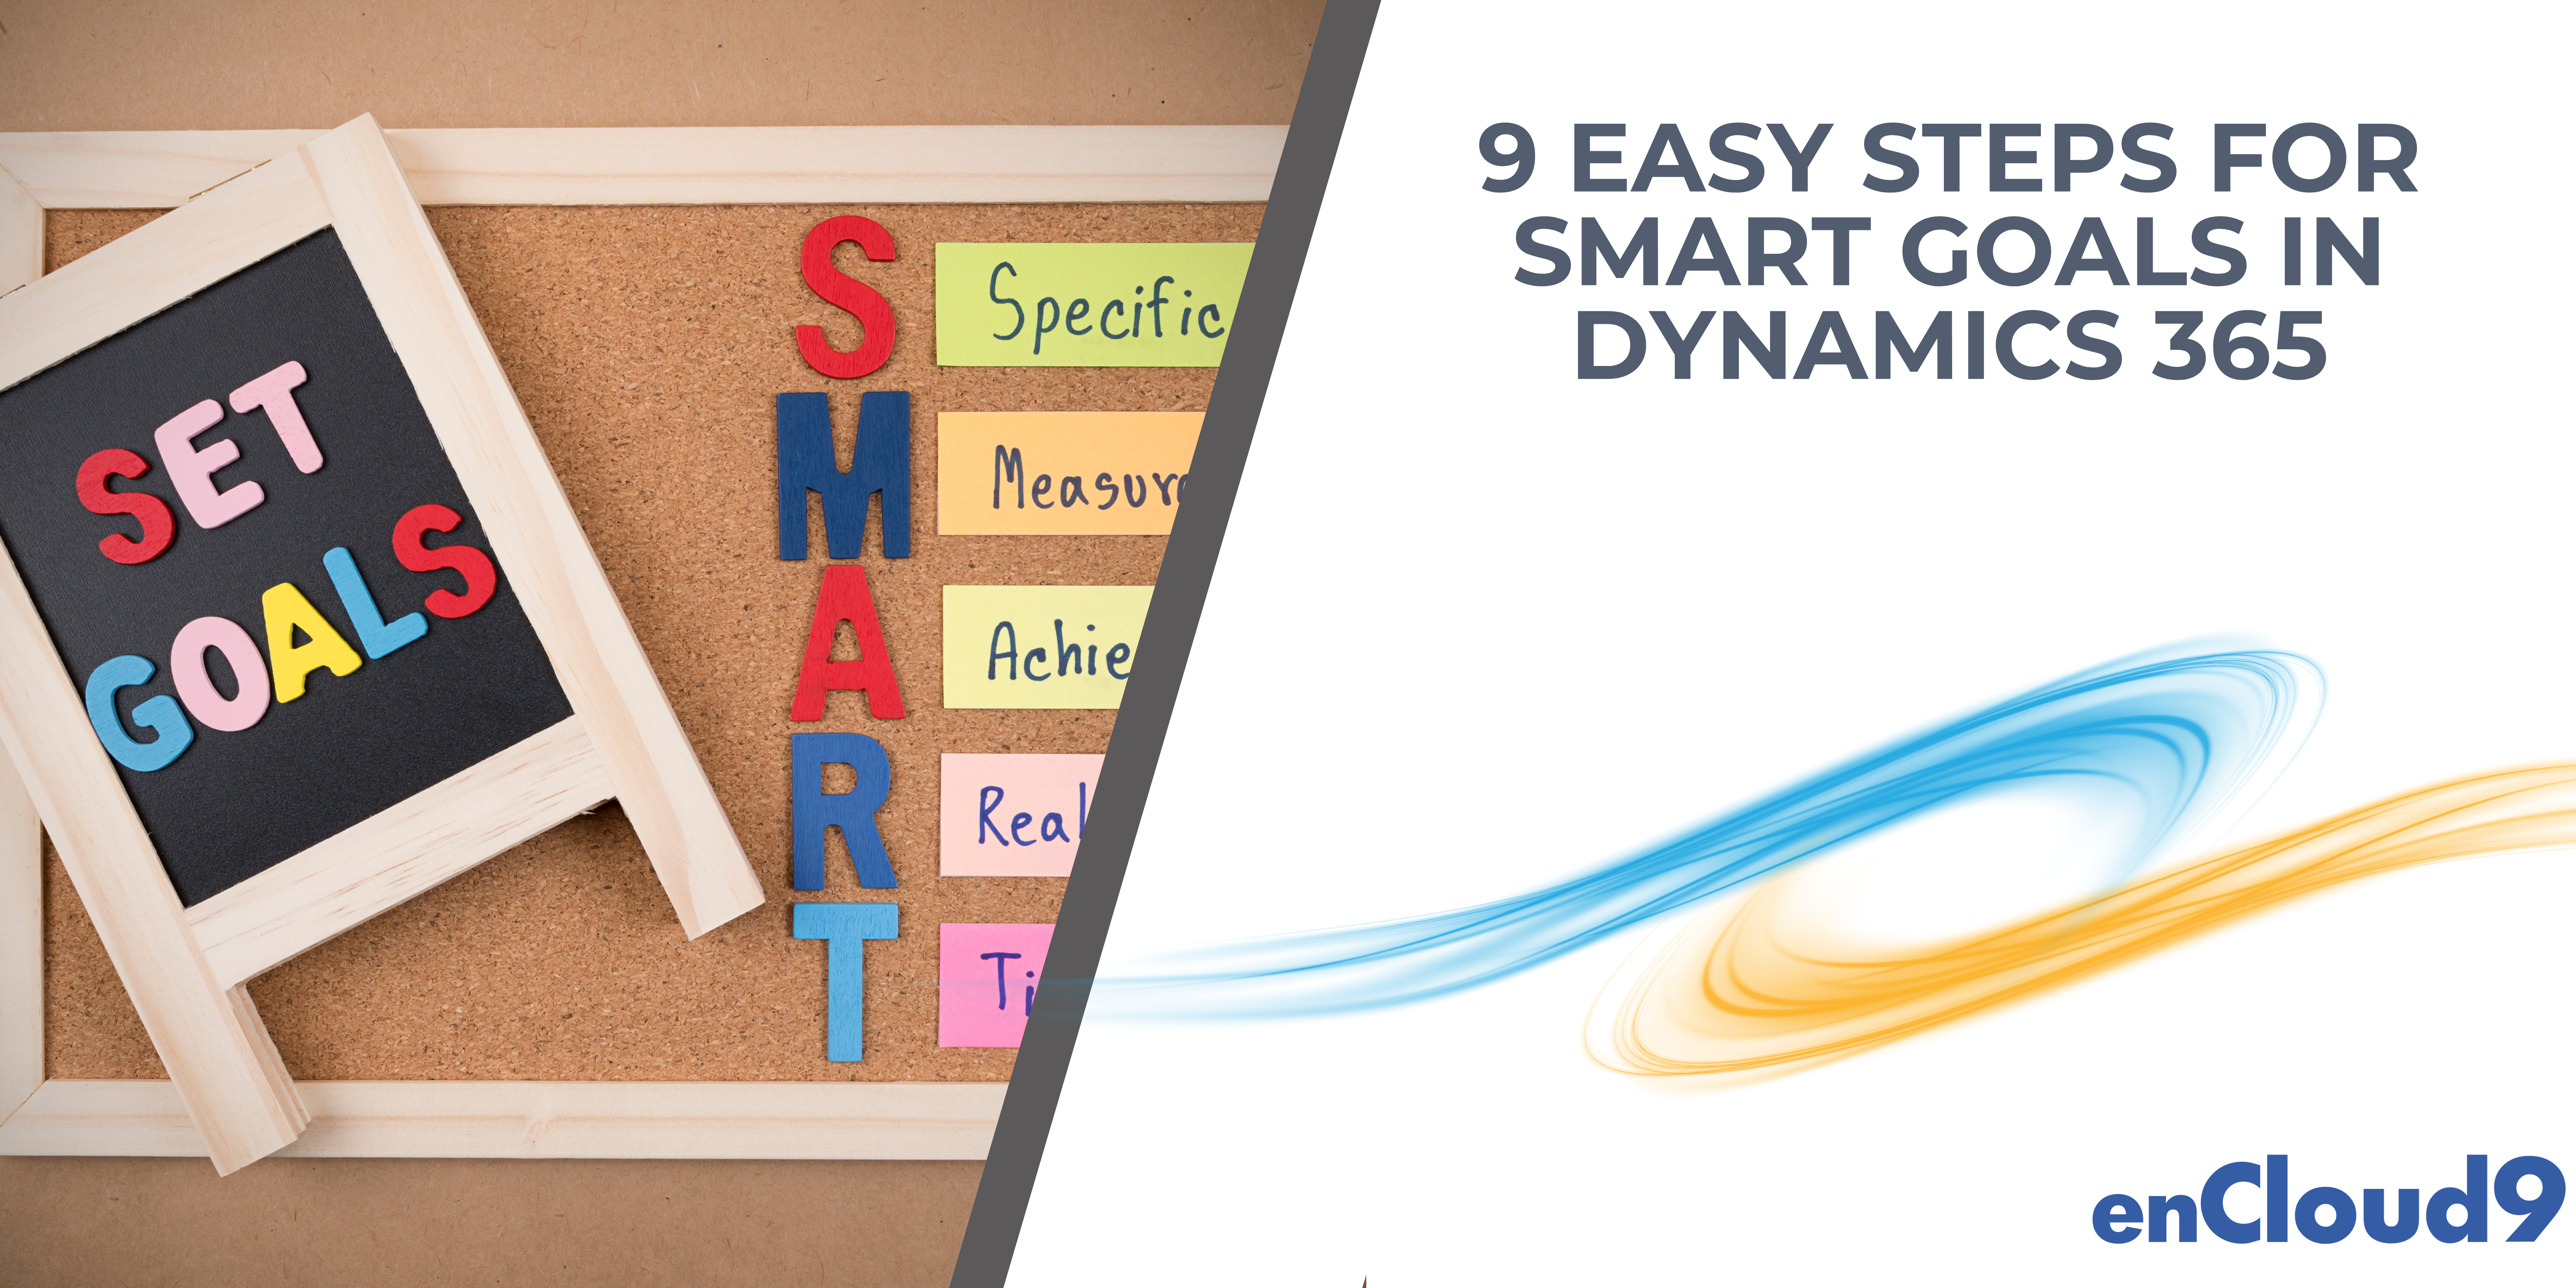 Smart Goals | Dynamics 365 | enCloud9